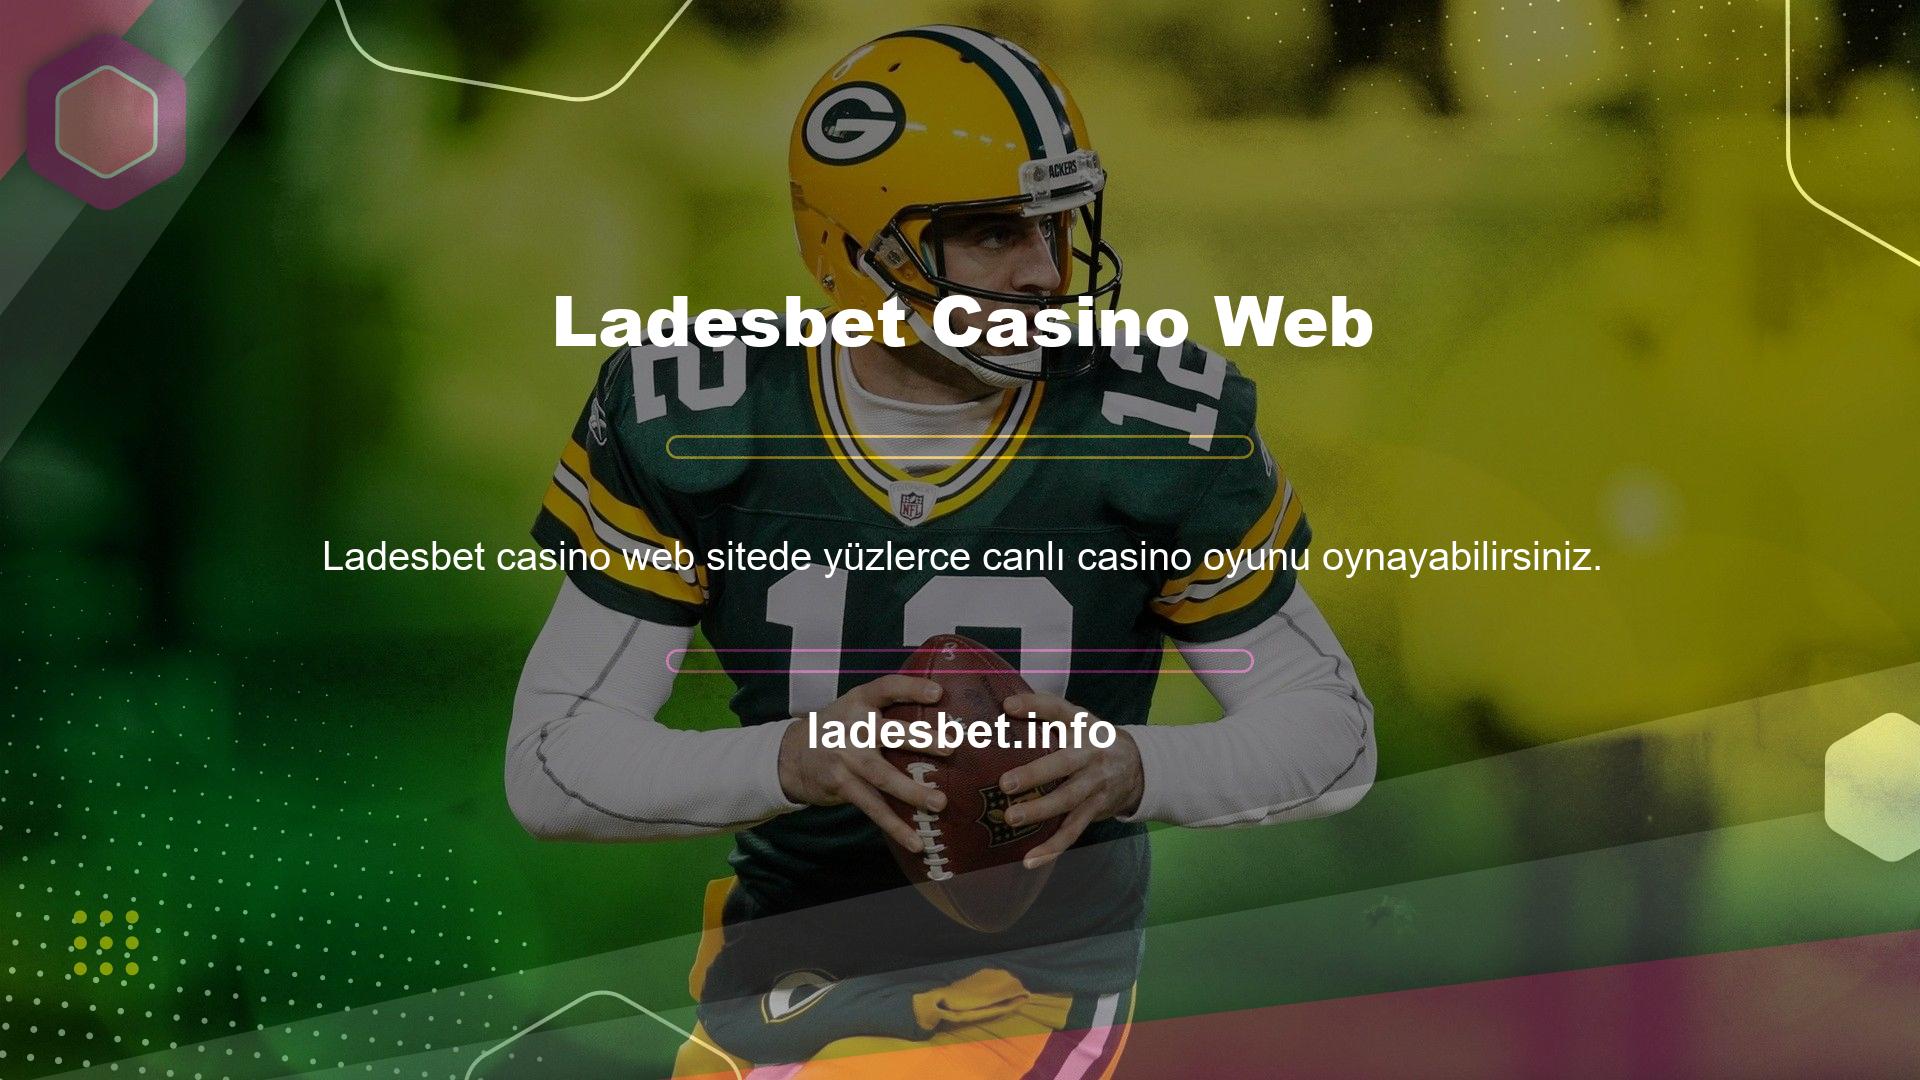 Casino web sitesinde yüksek oranlı oyunlar ve bahisler bulunmaktadır